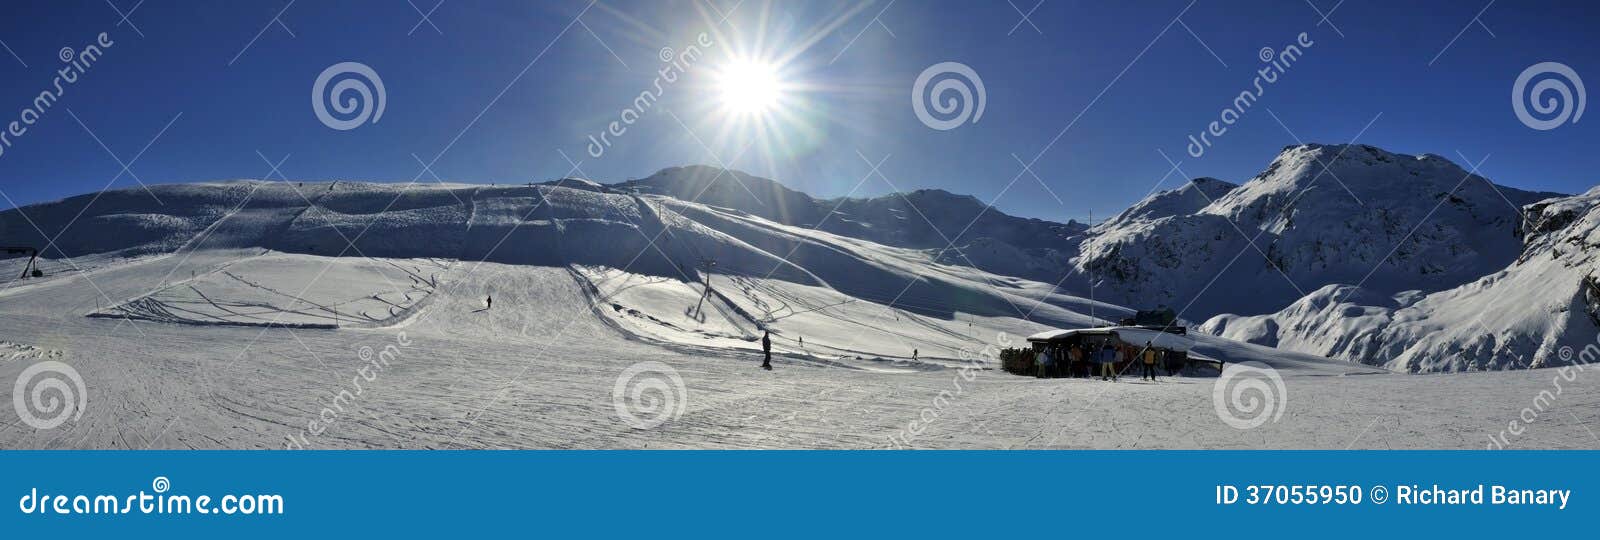 Χιονοδρομικό κέντρο Bivio. Τοπίο βουνών στο ελβετικό χιονοδρομικό κέντρο Bivio - Ελβετία